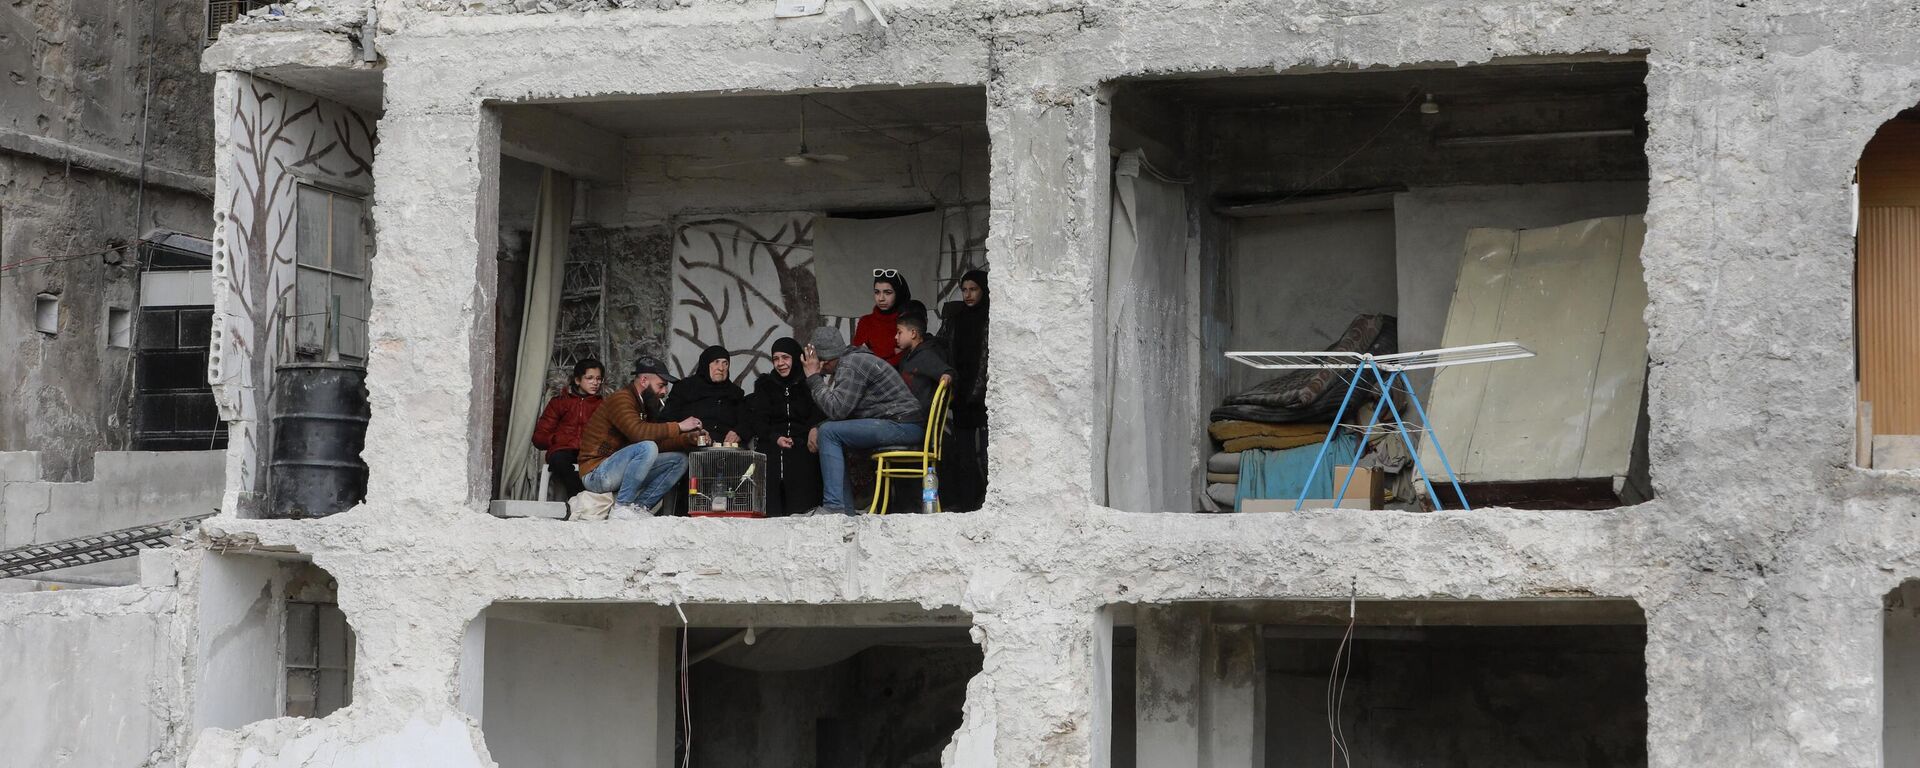 Семья за столом в здании, пострадавшем в результате землетрясения силой 7,8 балла, в районе Аль-Машарка города Алеппо, Сирия - Sputnik Абхазия, 1920, 20.03.2023